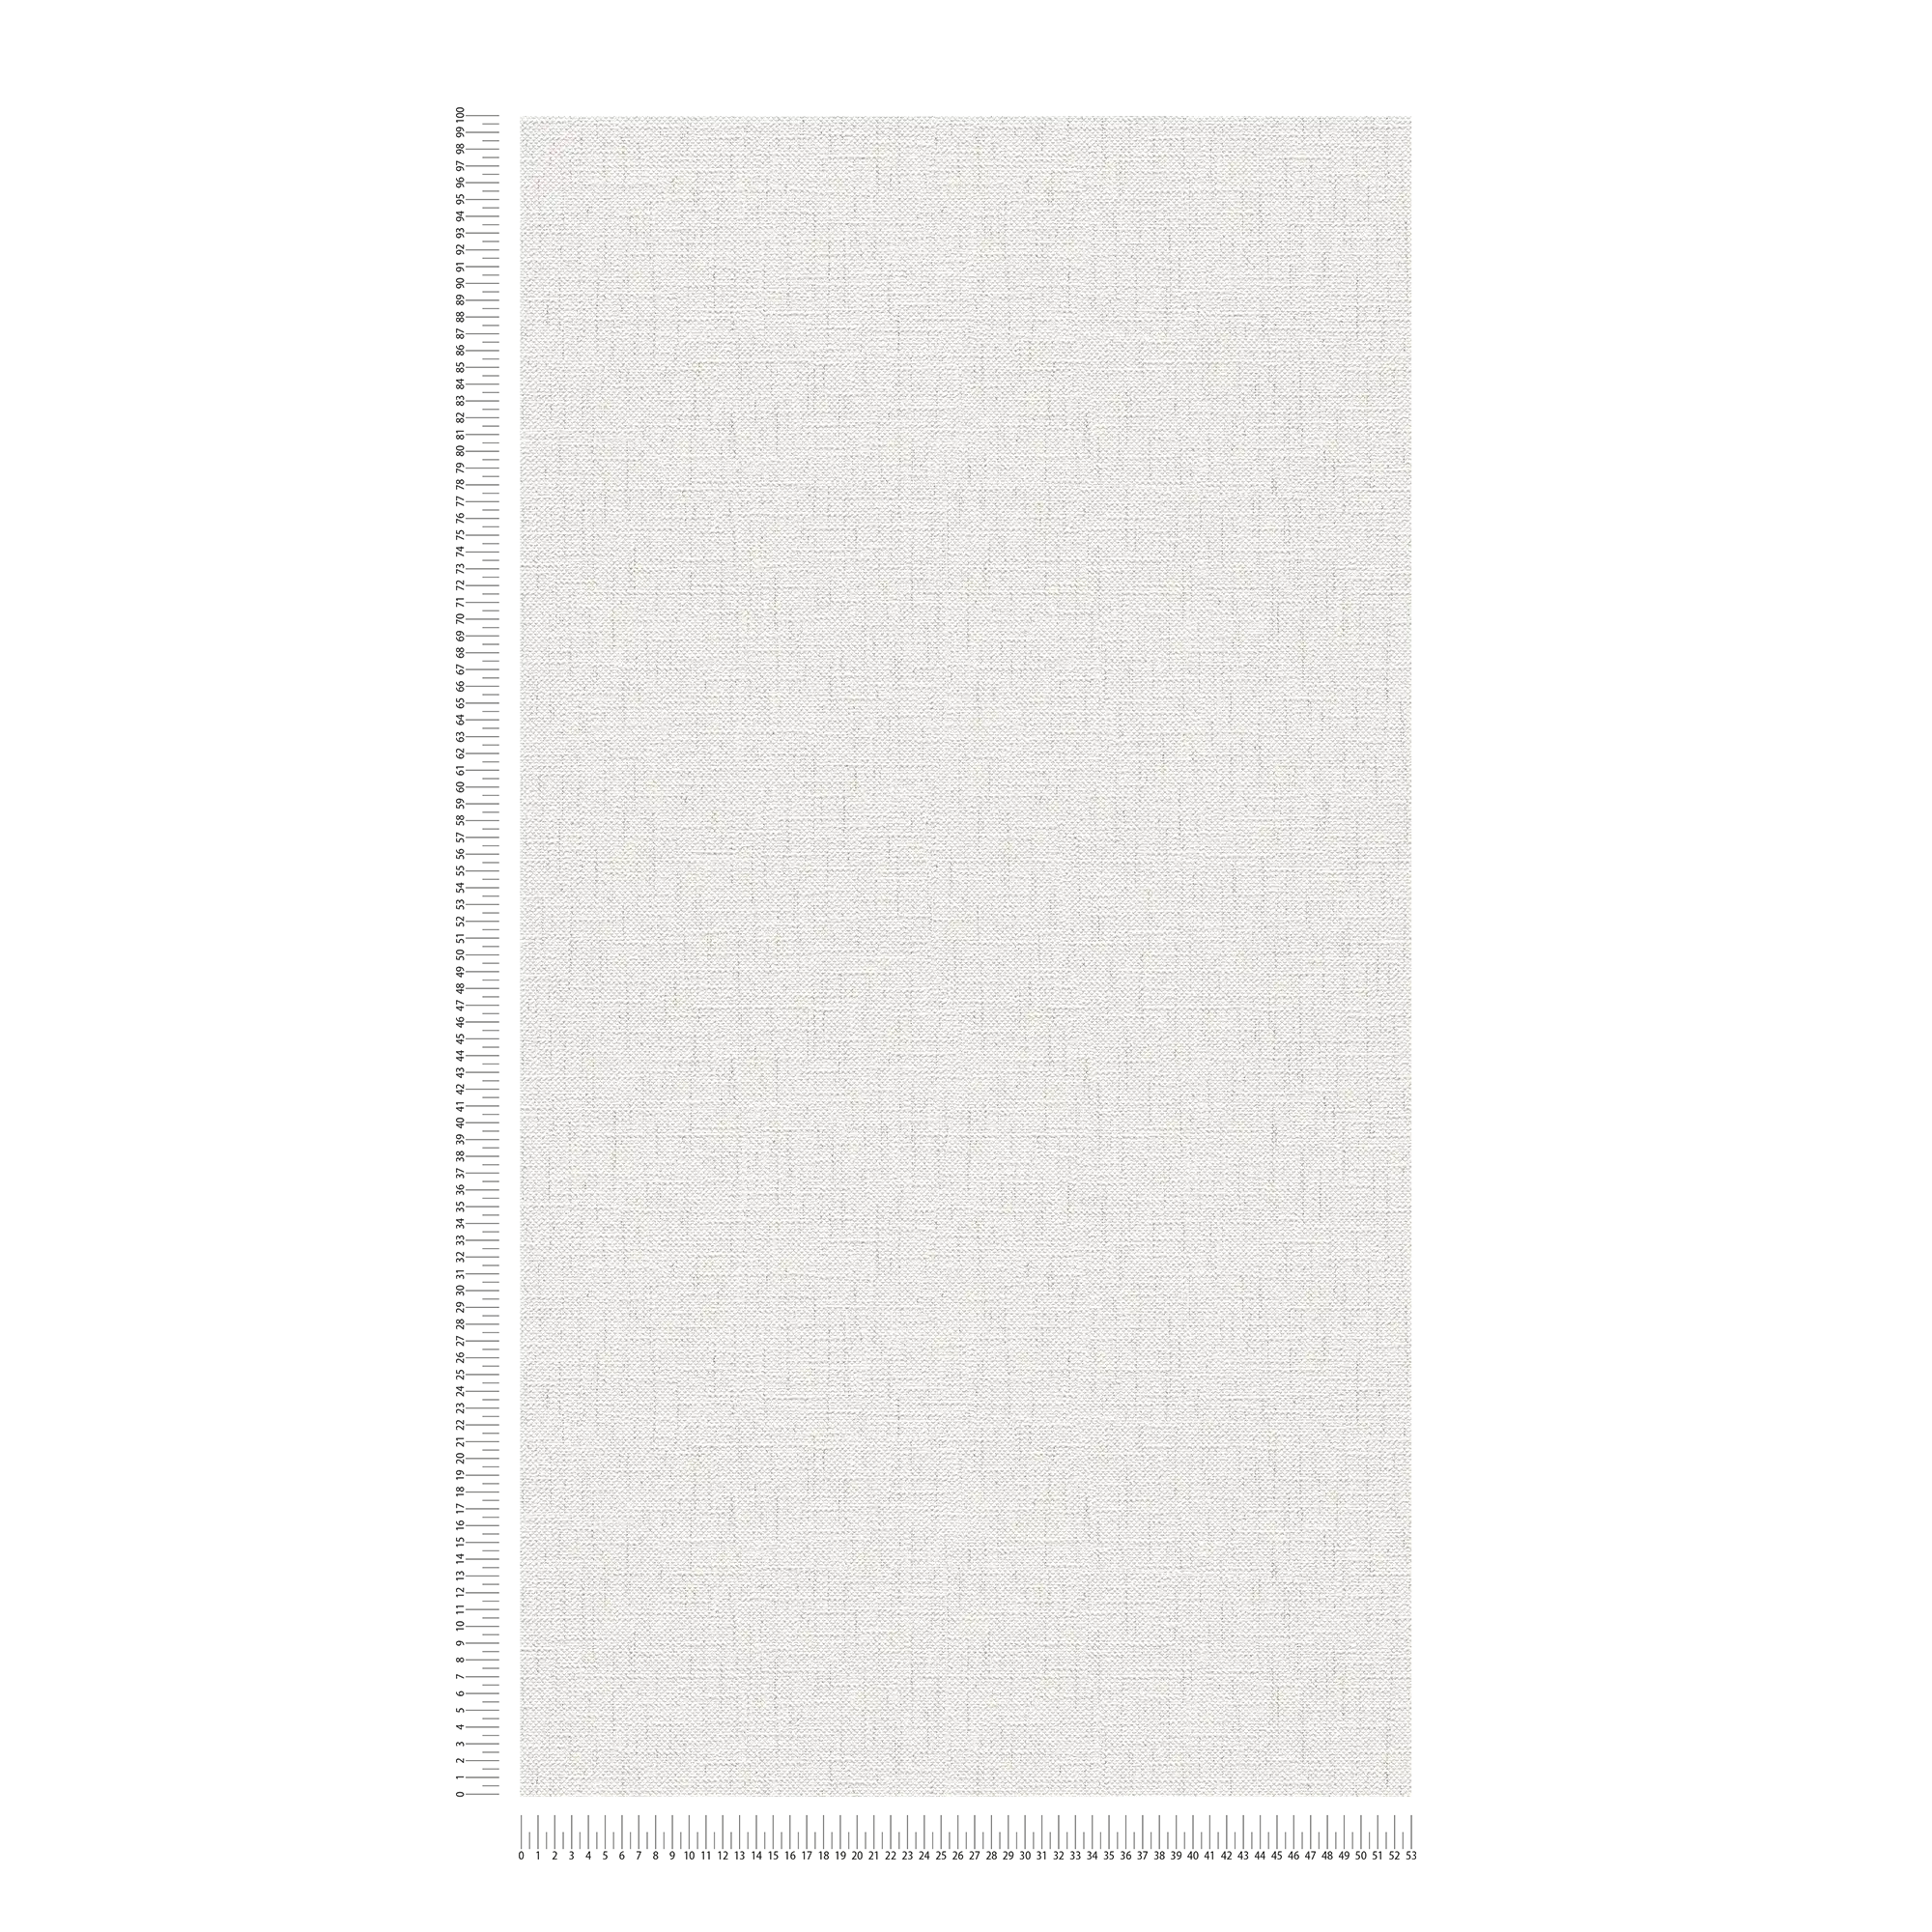             Carta da parati dall'aspetto tessile con colorazione screziata - grigio, bianco
        